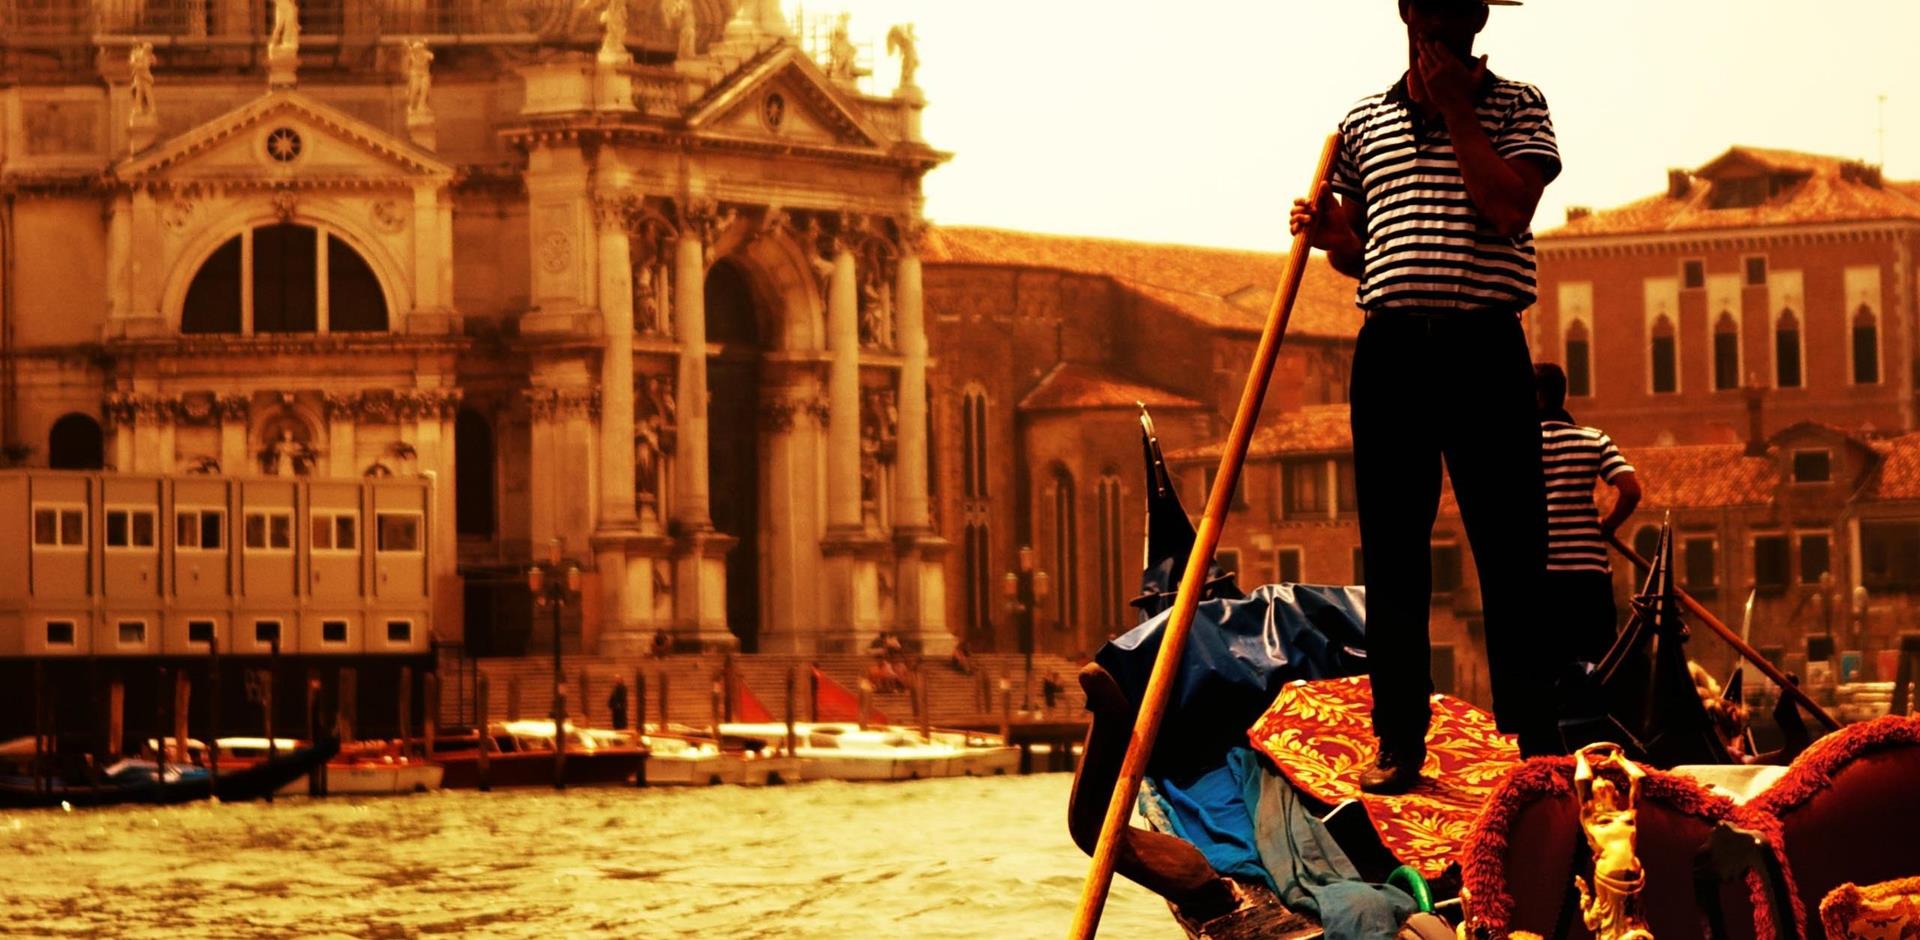 Romantic gondola ride in Venice